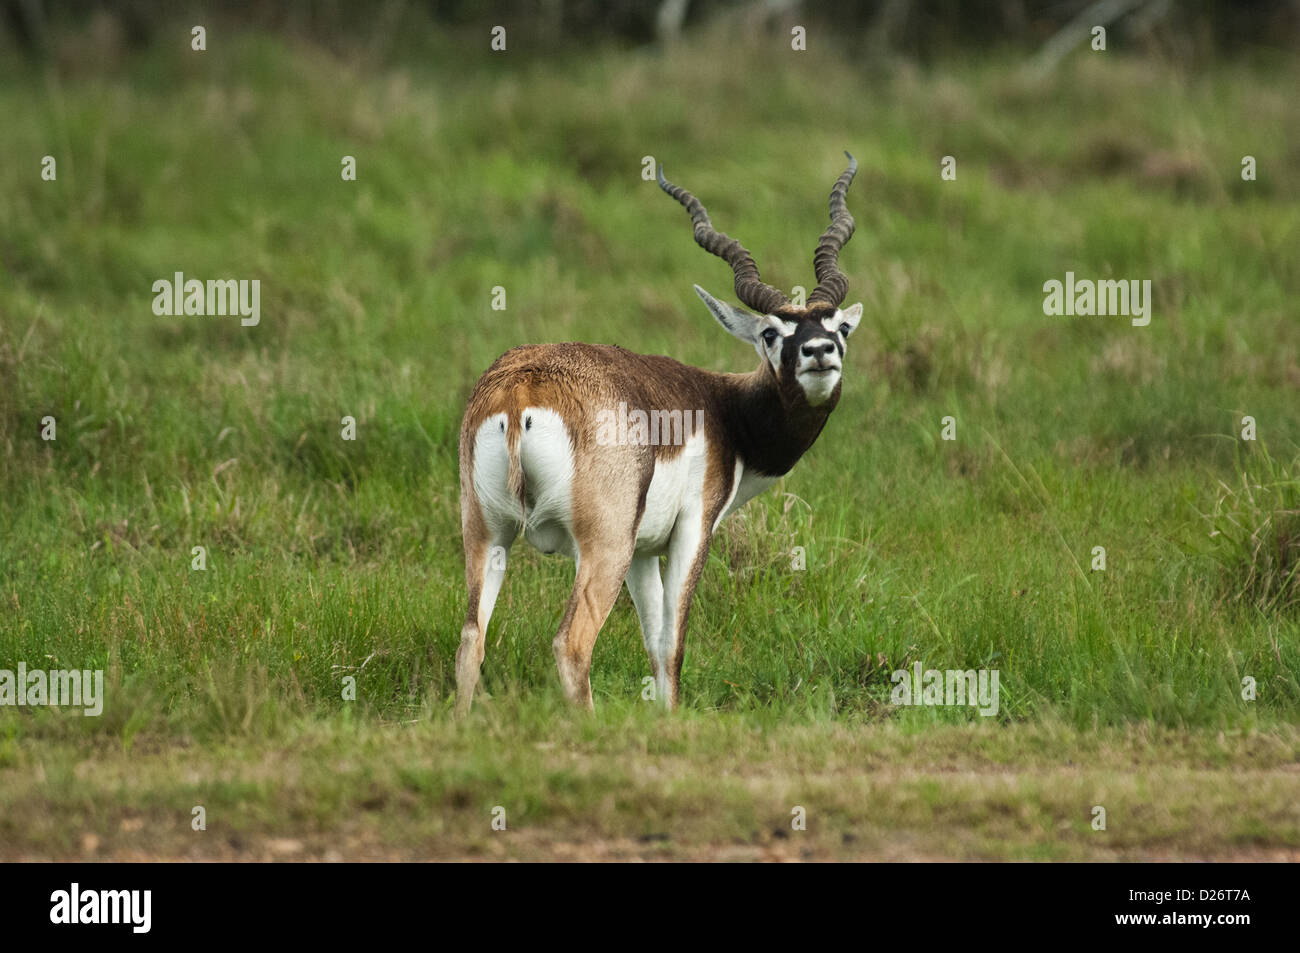 Blackbuck antelope (Antilope cervicapra) near Seadrift, Texas Stock Photo